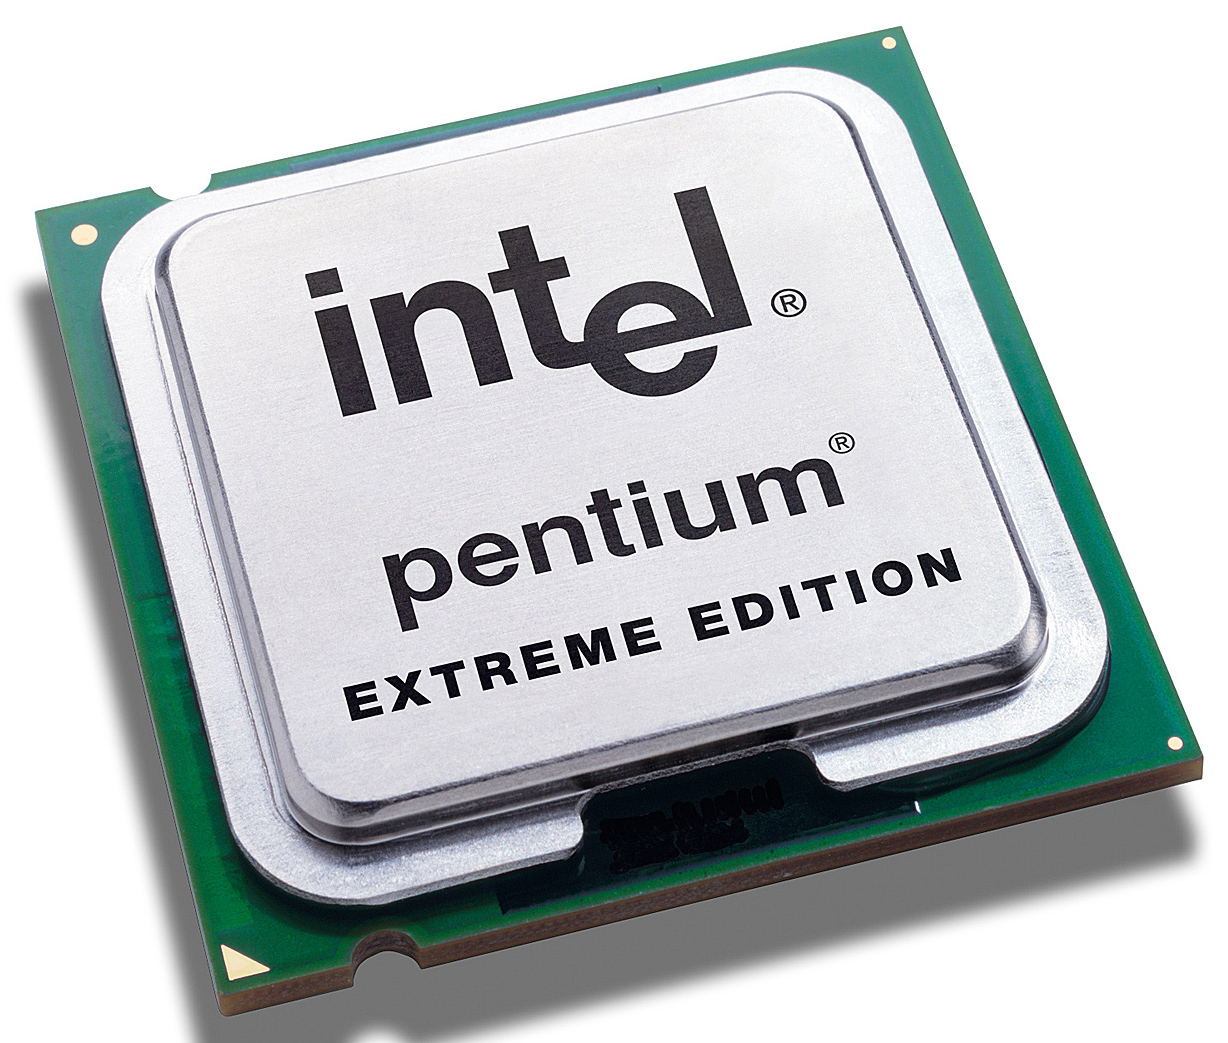 0F7145 Dell 3.2GHz 800MHz FSB 512KB L2 Cache Intel Pentium 4 Extreme Edition Mobile Processor Upgrade